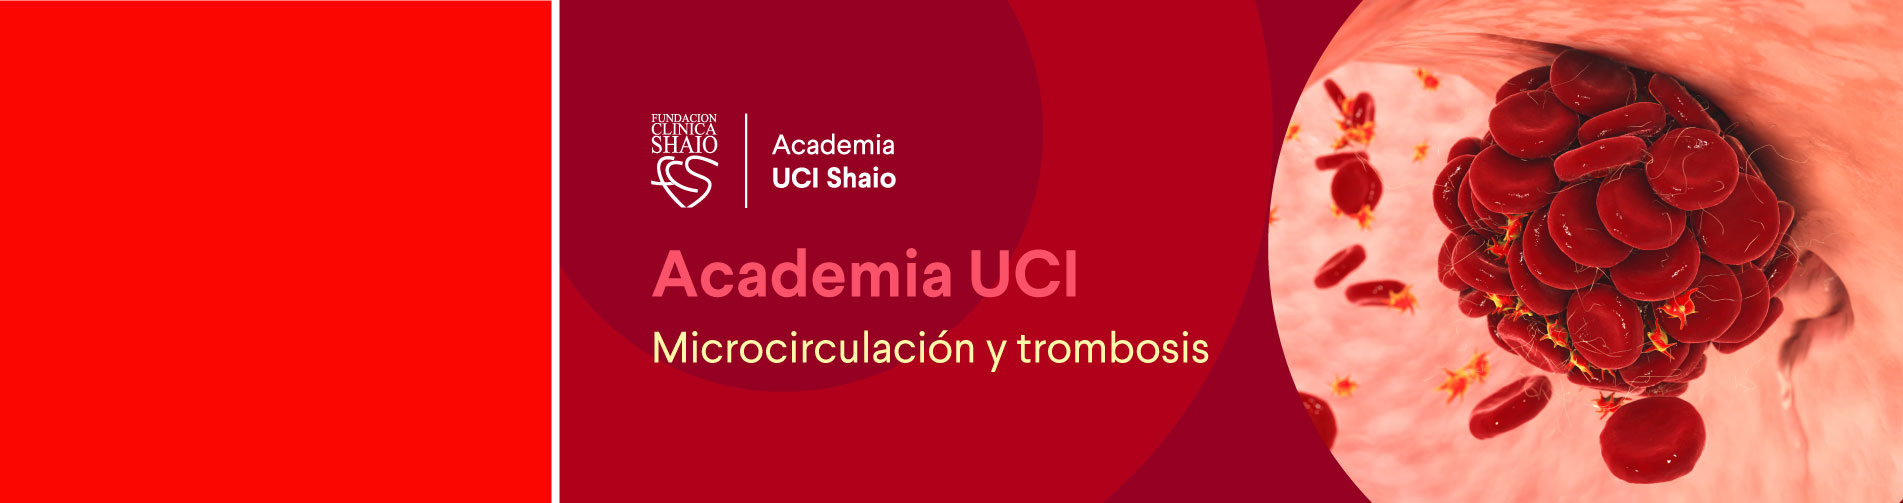 Programa Academia UCI: microcirculación, coagulación y trombosis en el paciente crítico